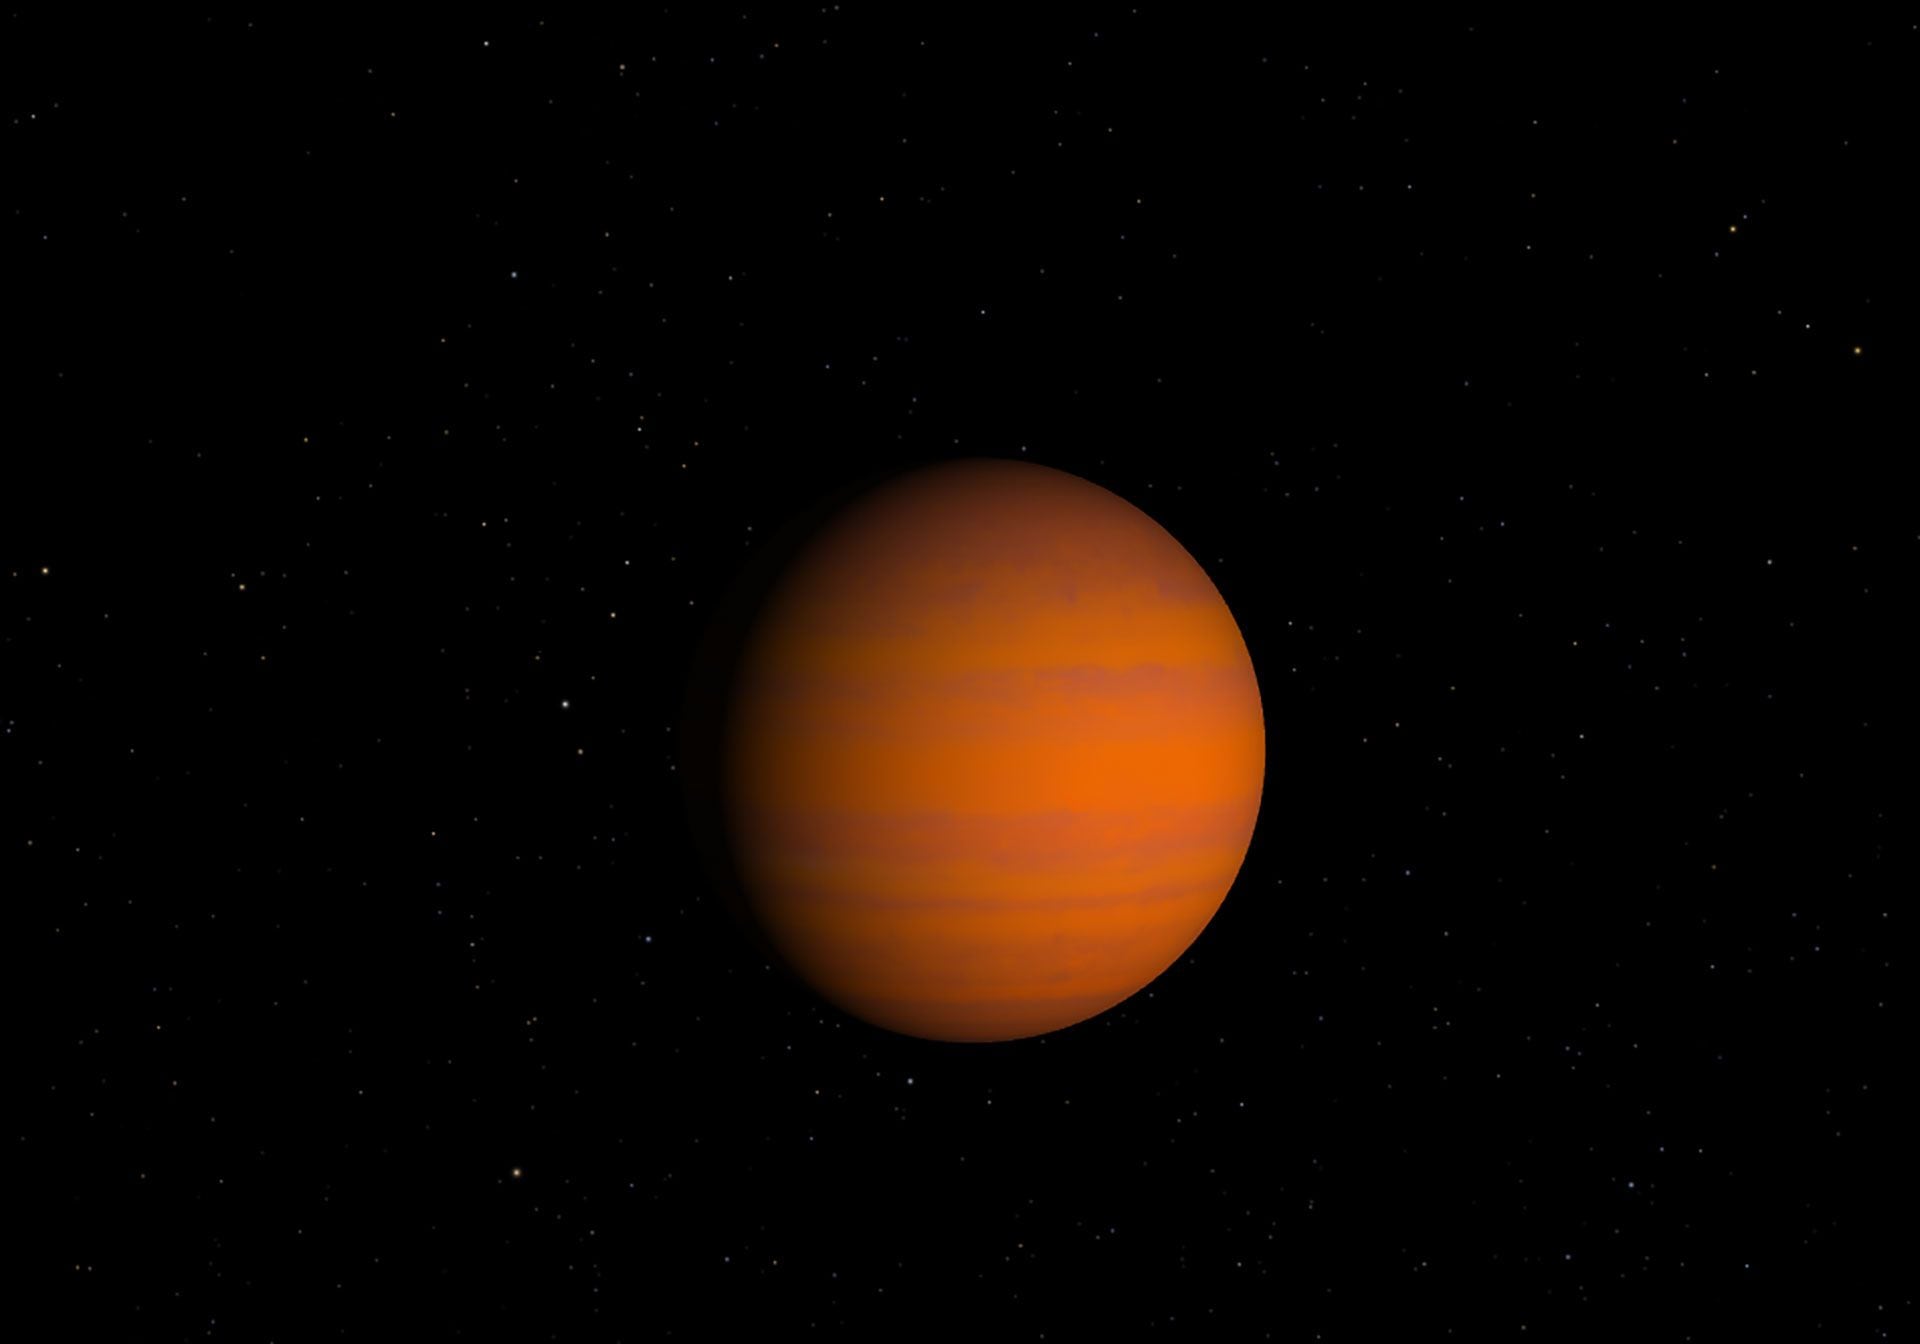 Una imagen del planeta 8 UMi b elaborada por la NASA